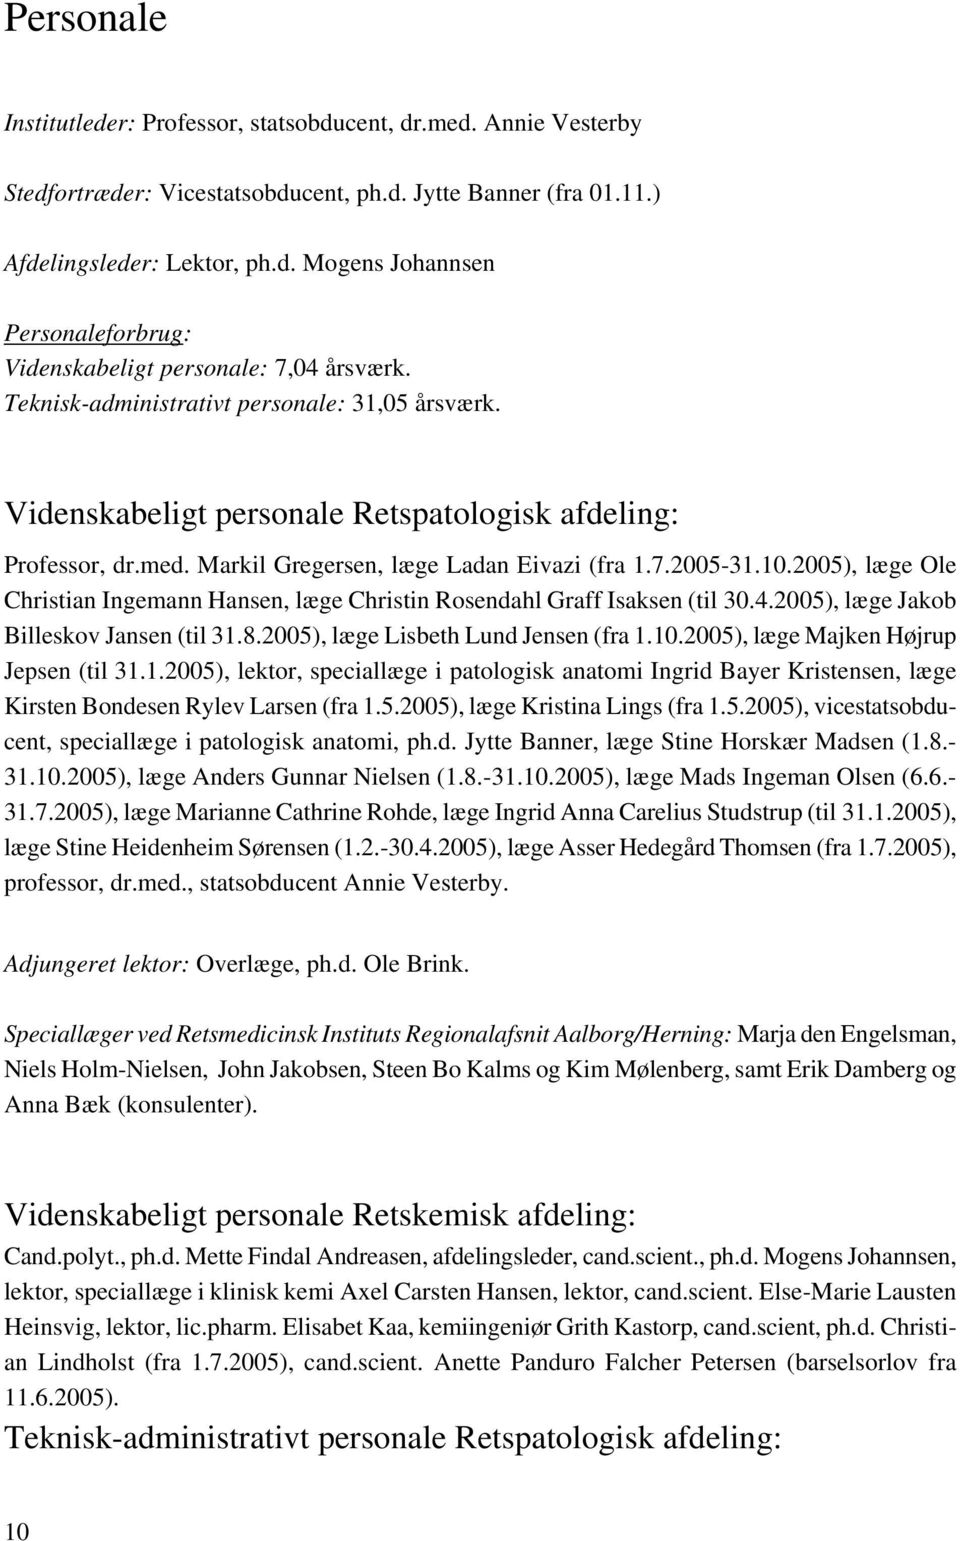 2005), læge Ole Christian Ingemann Hansen, læge Christin Rosendahl Graff Isaksen (til 30.4.2005), læge Jakob Billeskov Jansen (til 31.8.2005), læge Lisbeth Lund Jensen (fra 1.10.